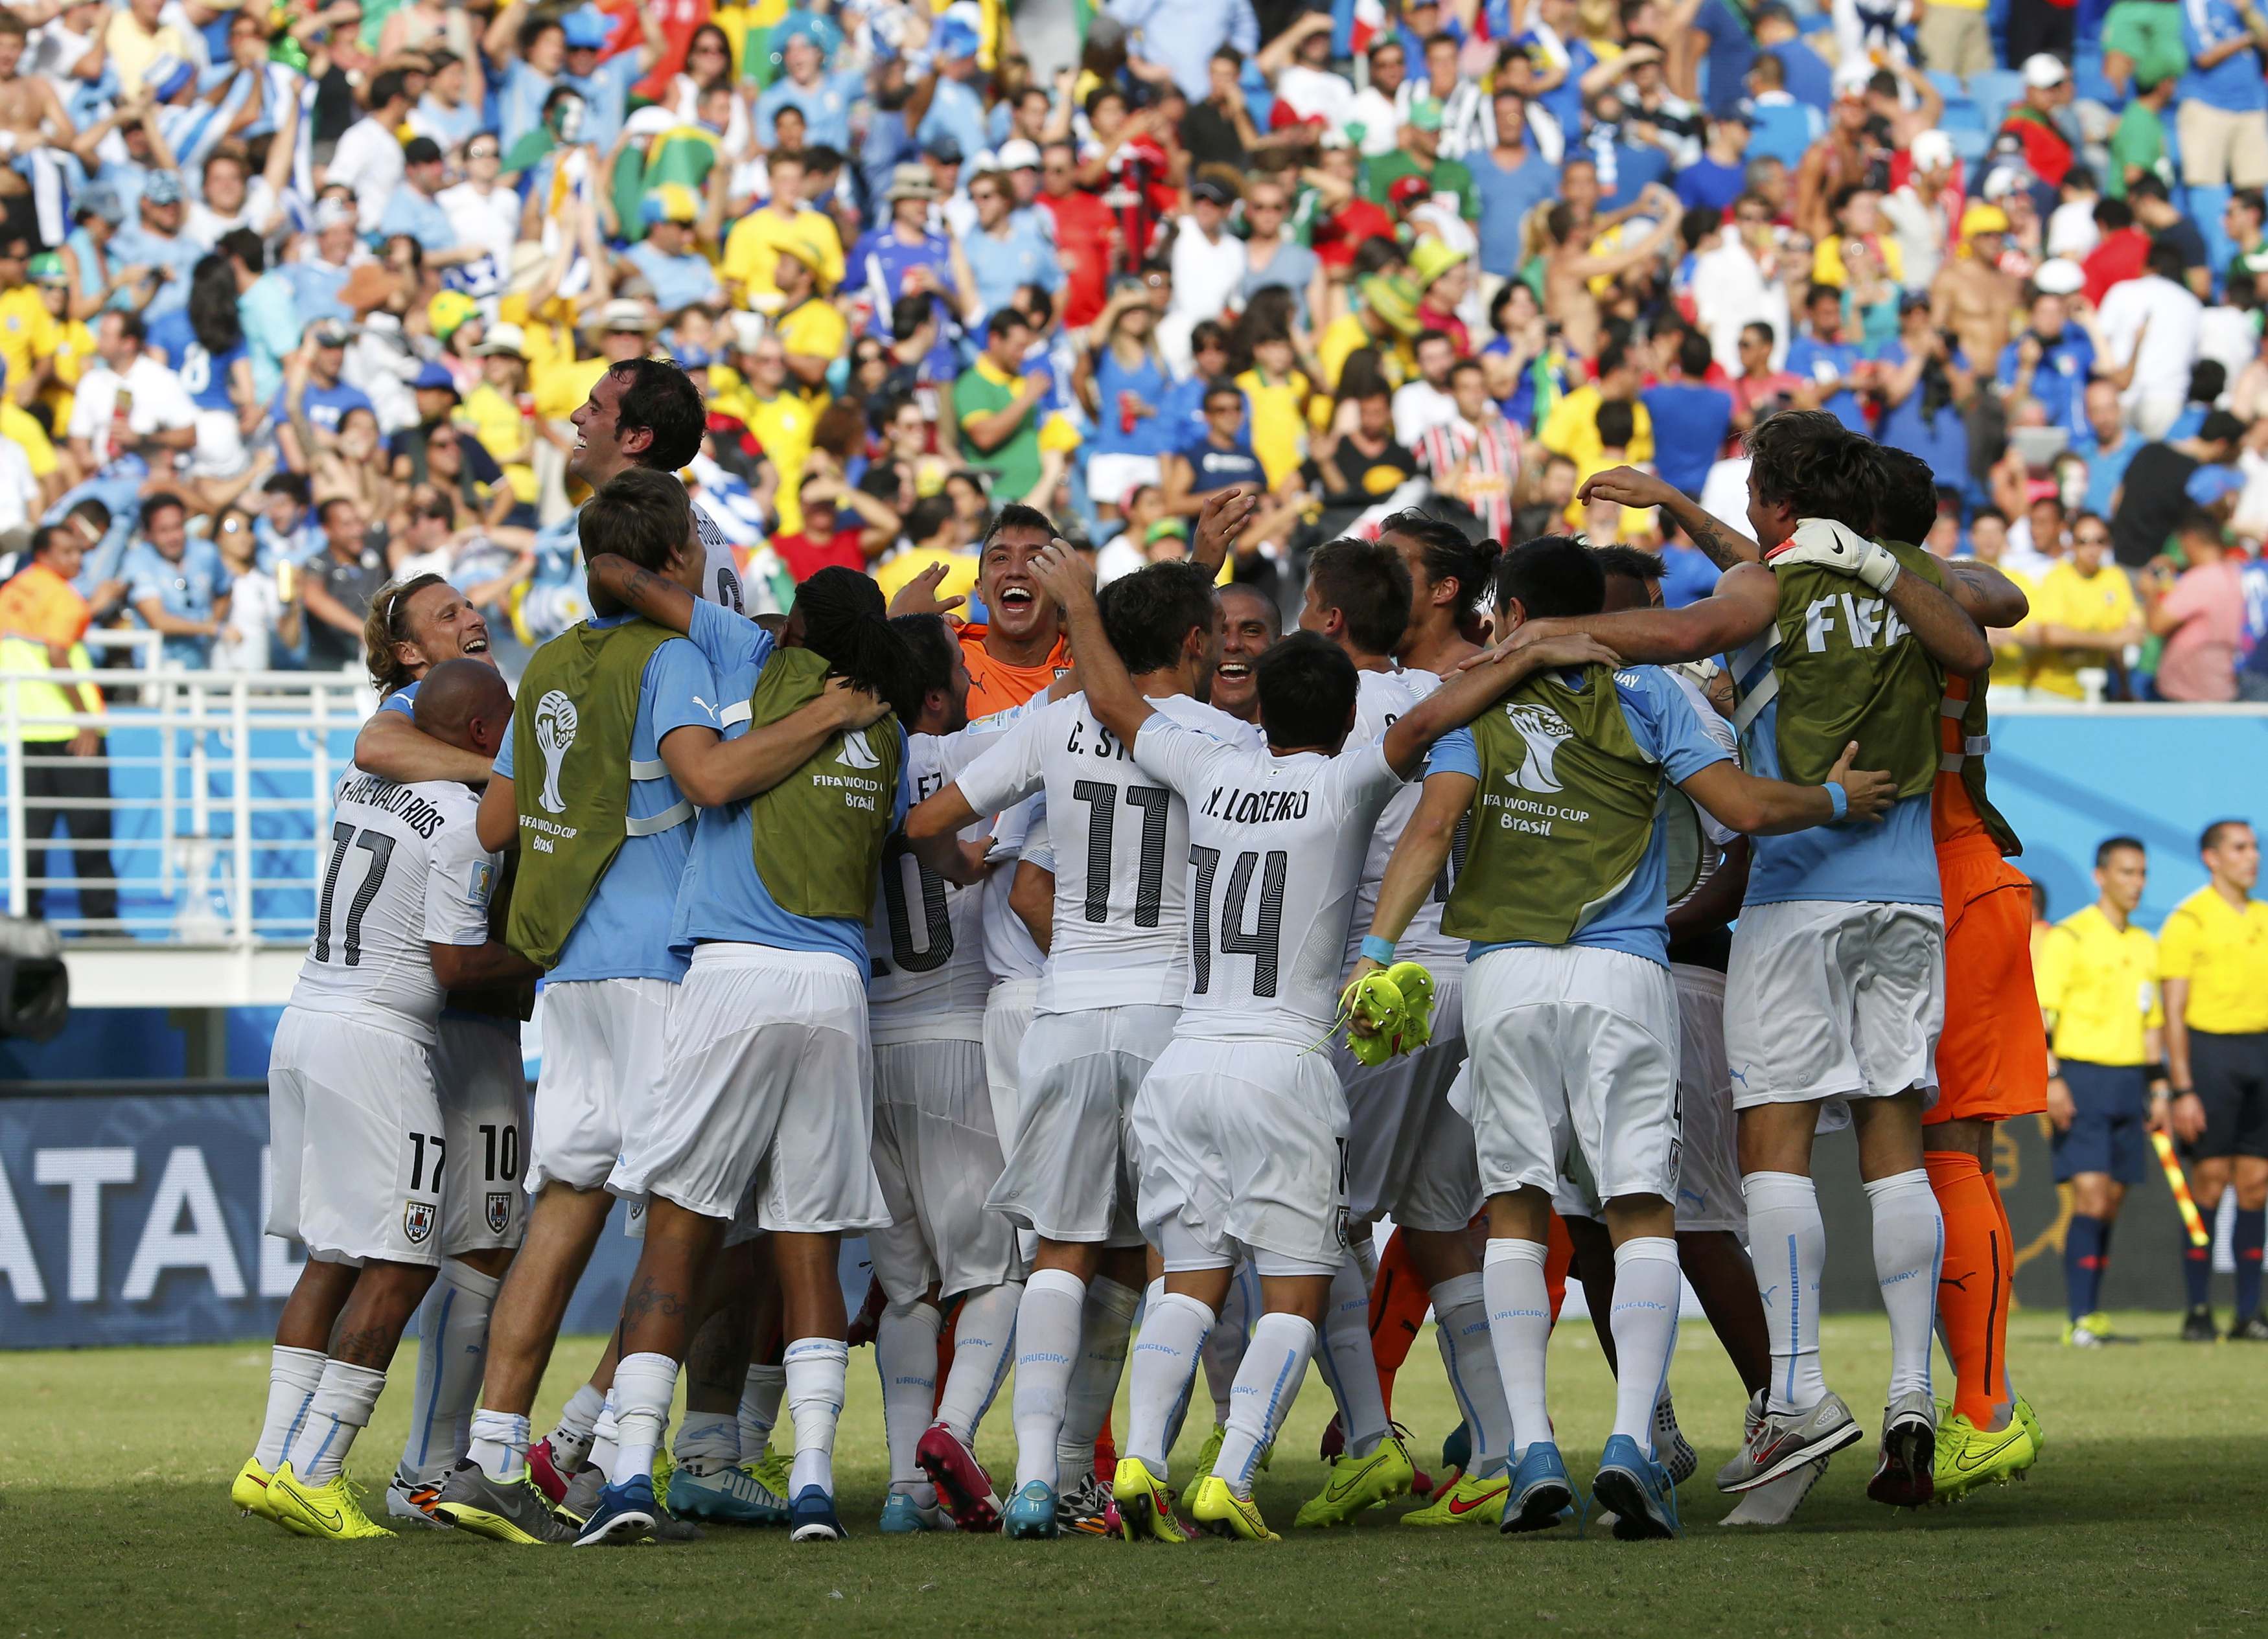 Μουντιάλ 2014:Ιταλία – Ουρουγουάη (0 – 1) – Αποκλείστηκε η Σκουάντρα Ατζούρα